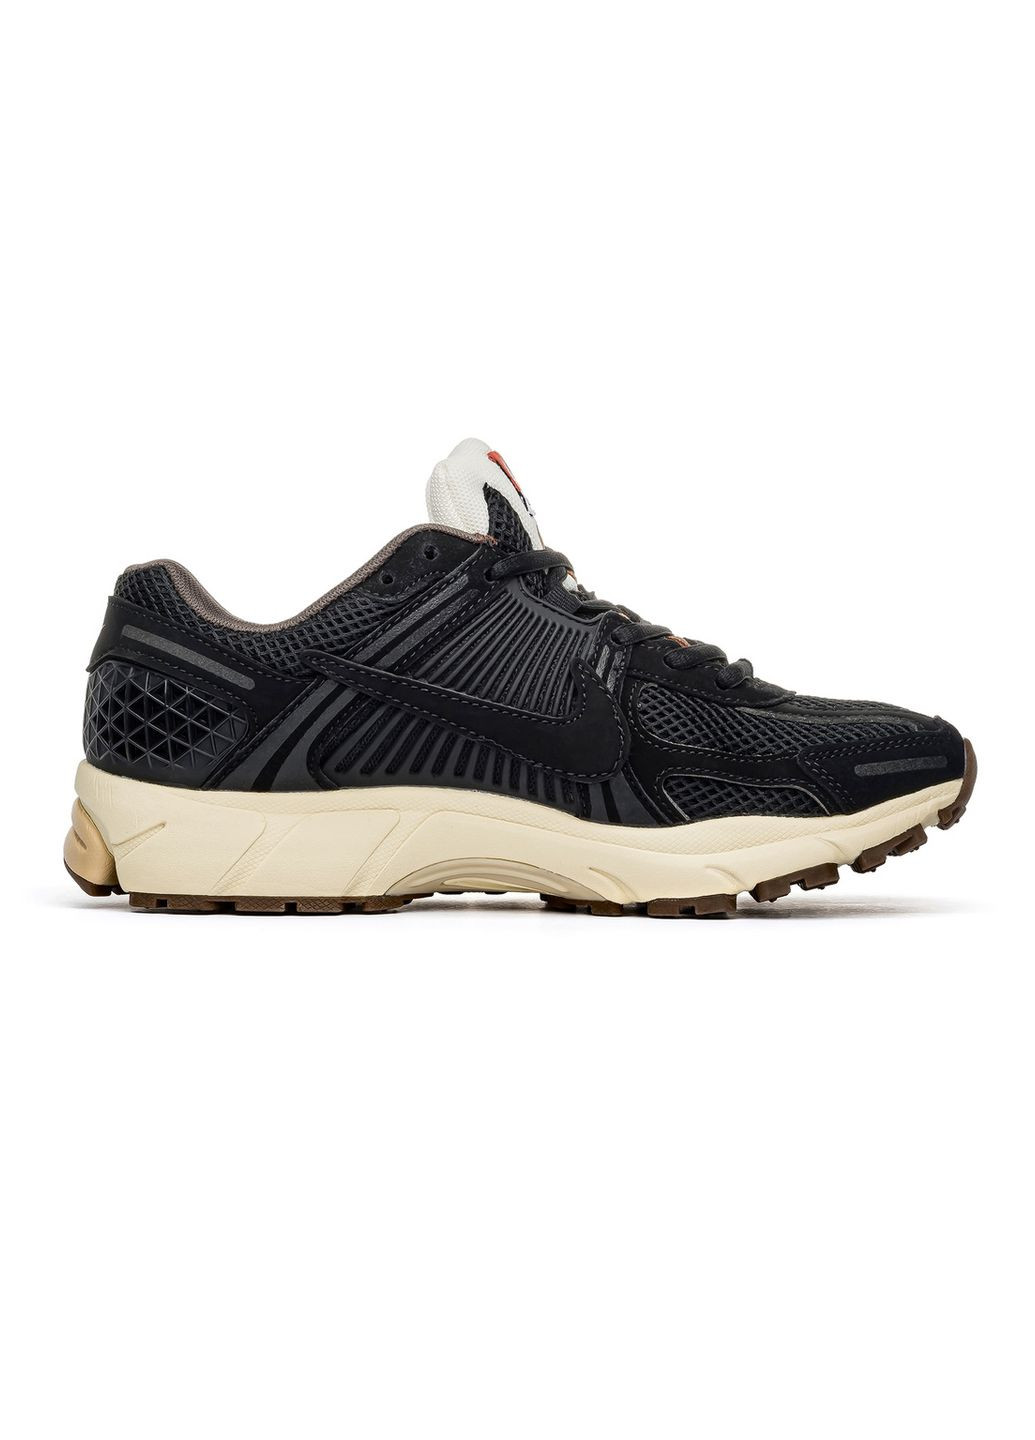 Черные демисезонные кроссовки мужские zoom wmns "black", вьетнам Nike Vomero 5